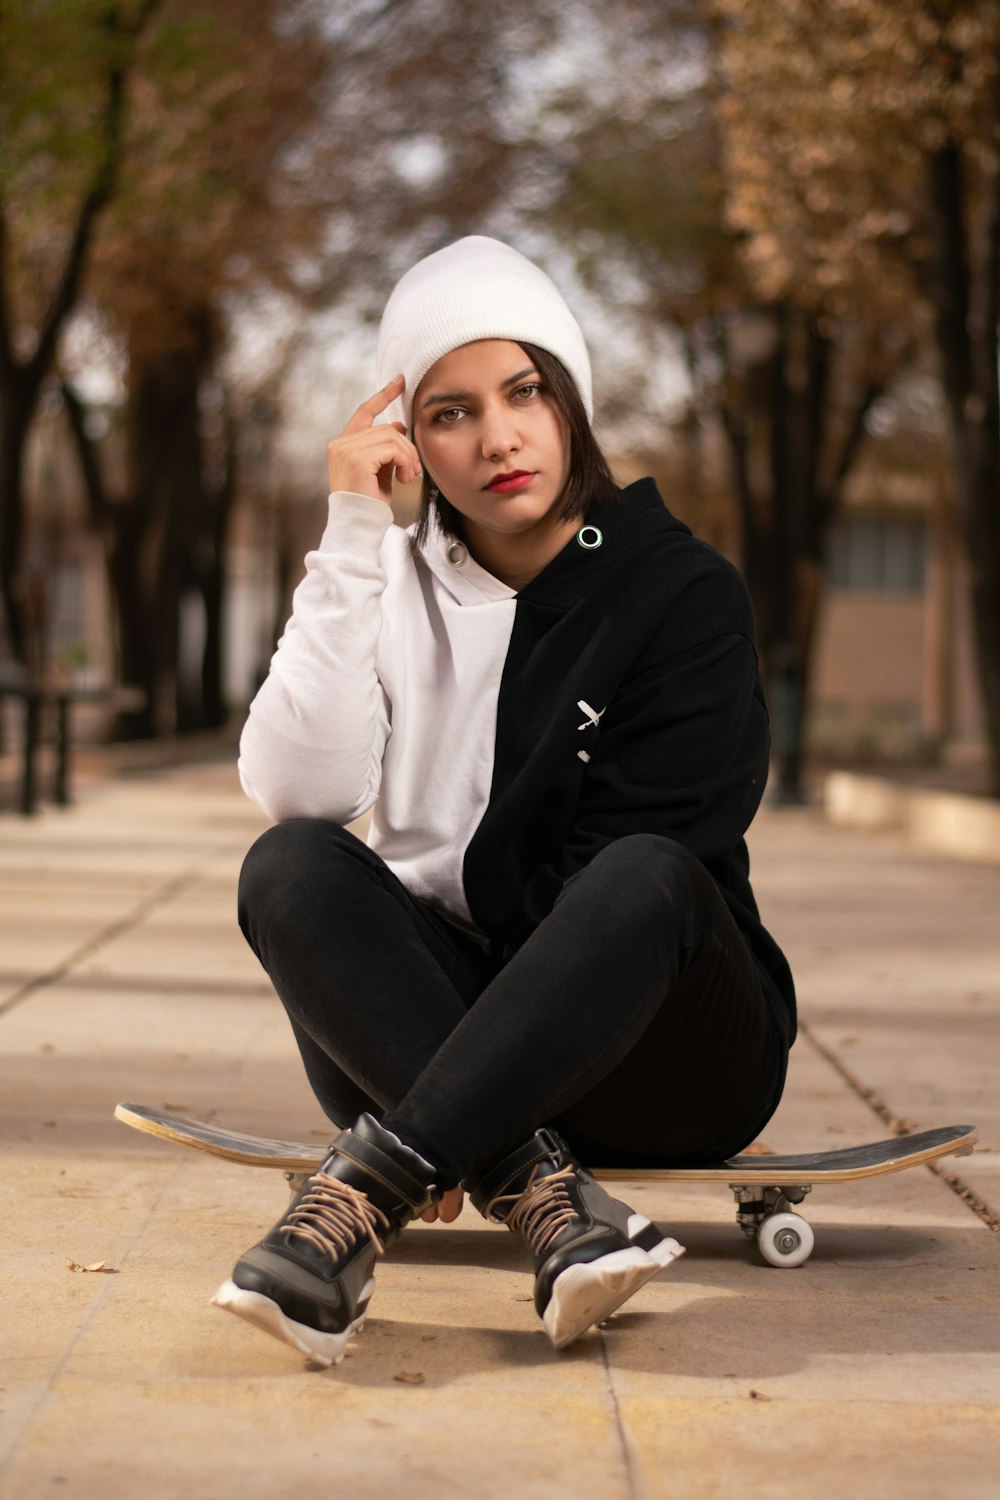 a woman sitting on a skateboard on a sidewalk